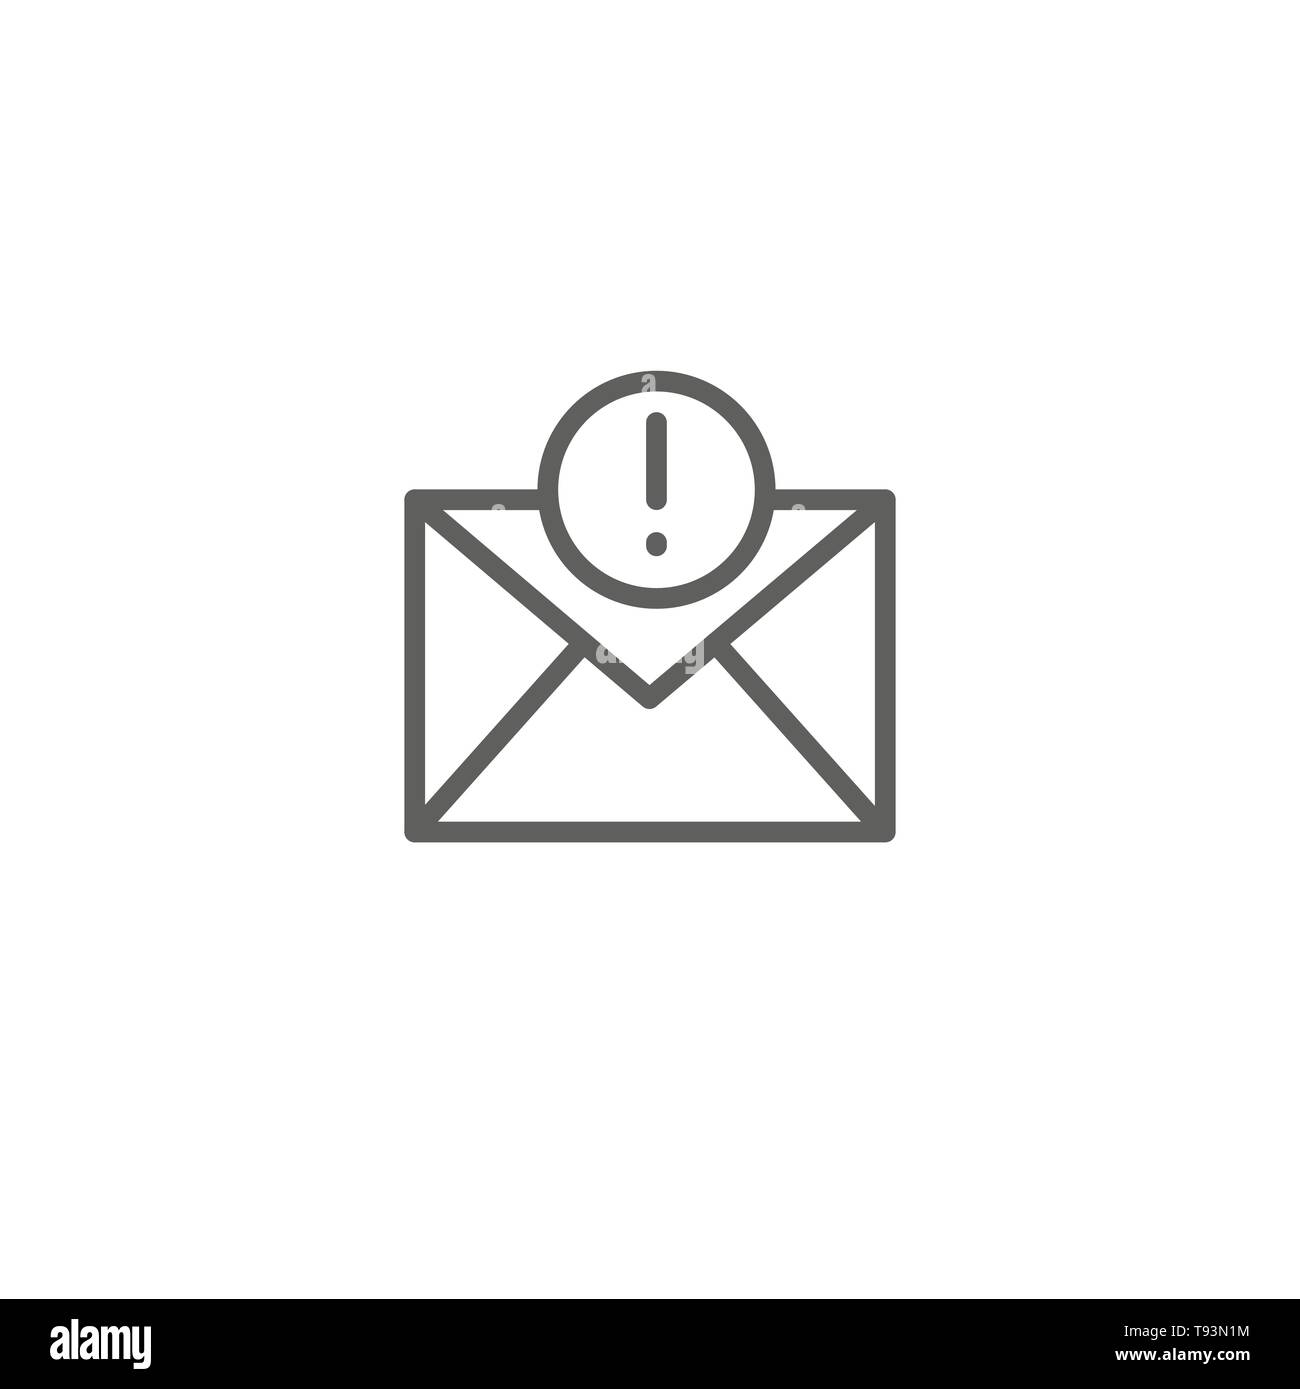 E-Mail Marketing Kampagnen Symbol w Umschlag und Ausrufezeichen Stock Vektor